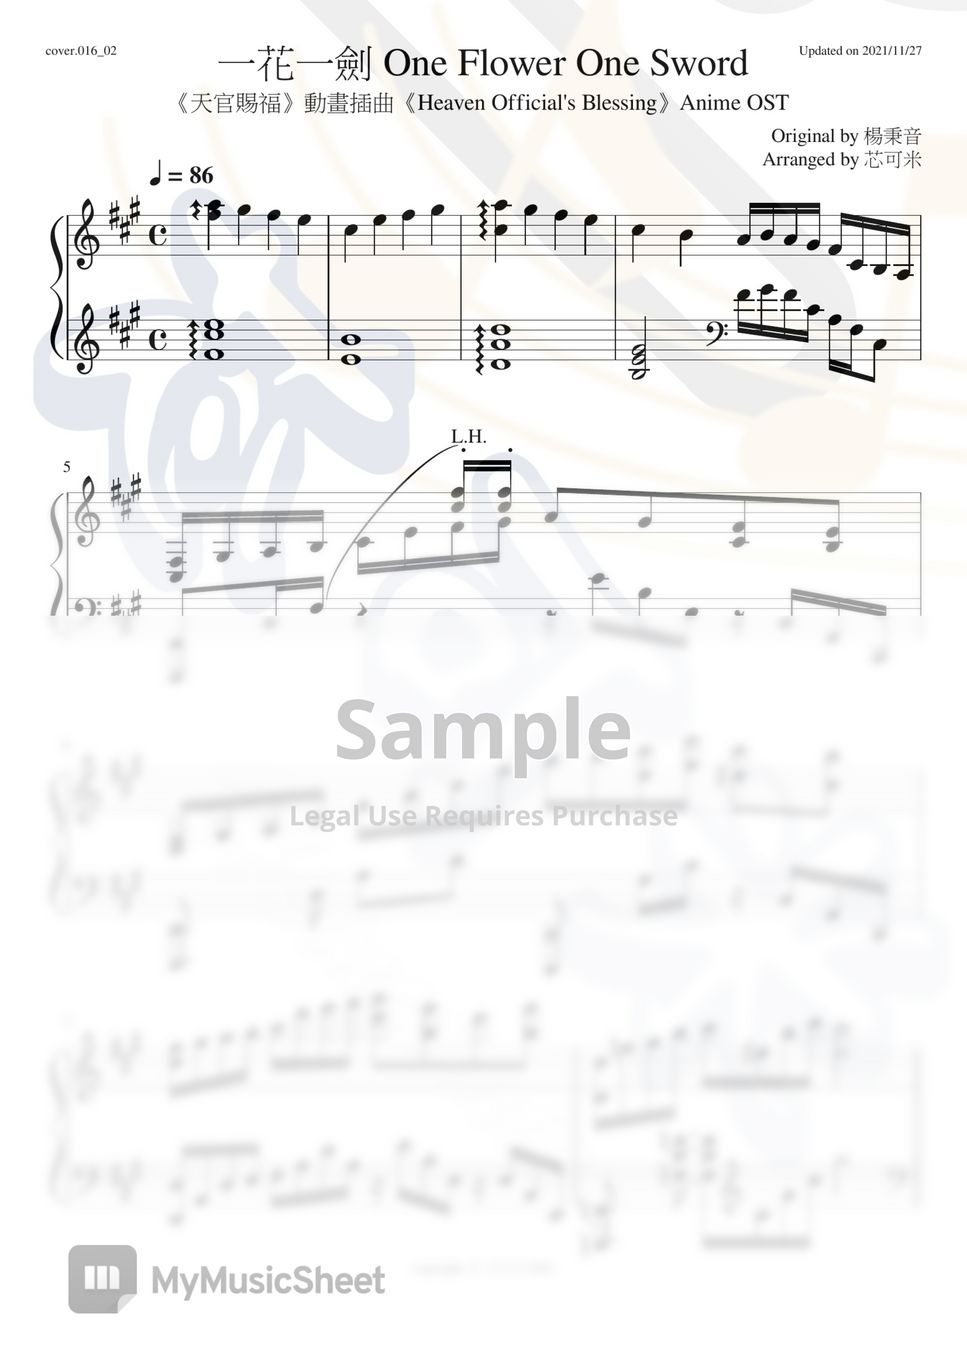 天官賜福 Heaven Officials Blessing - 一花一劍 One Flower One Sword (2nd Version 鋼琴獨奏 Piano Solo) by 芯可米 Hsincomie